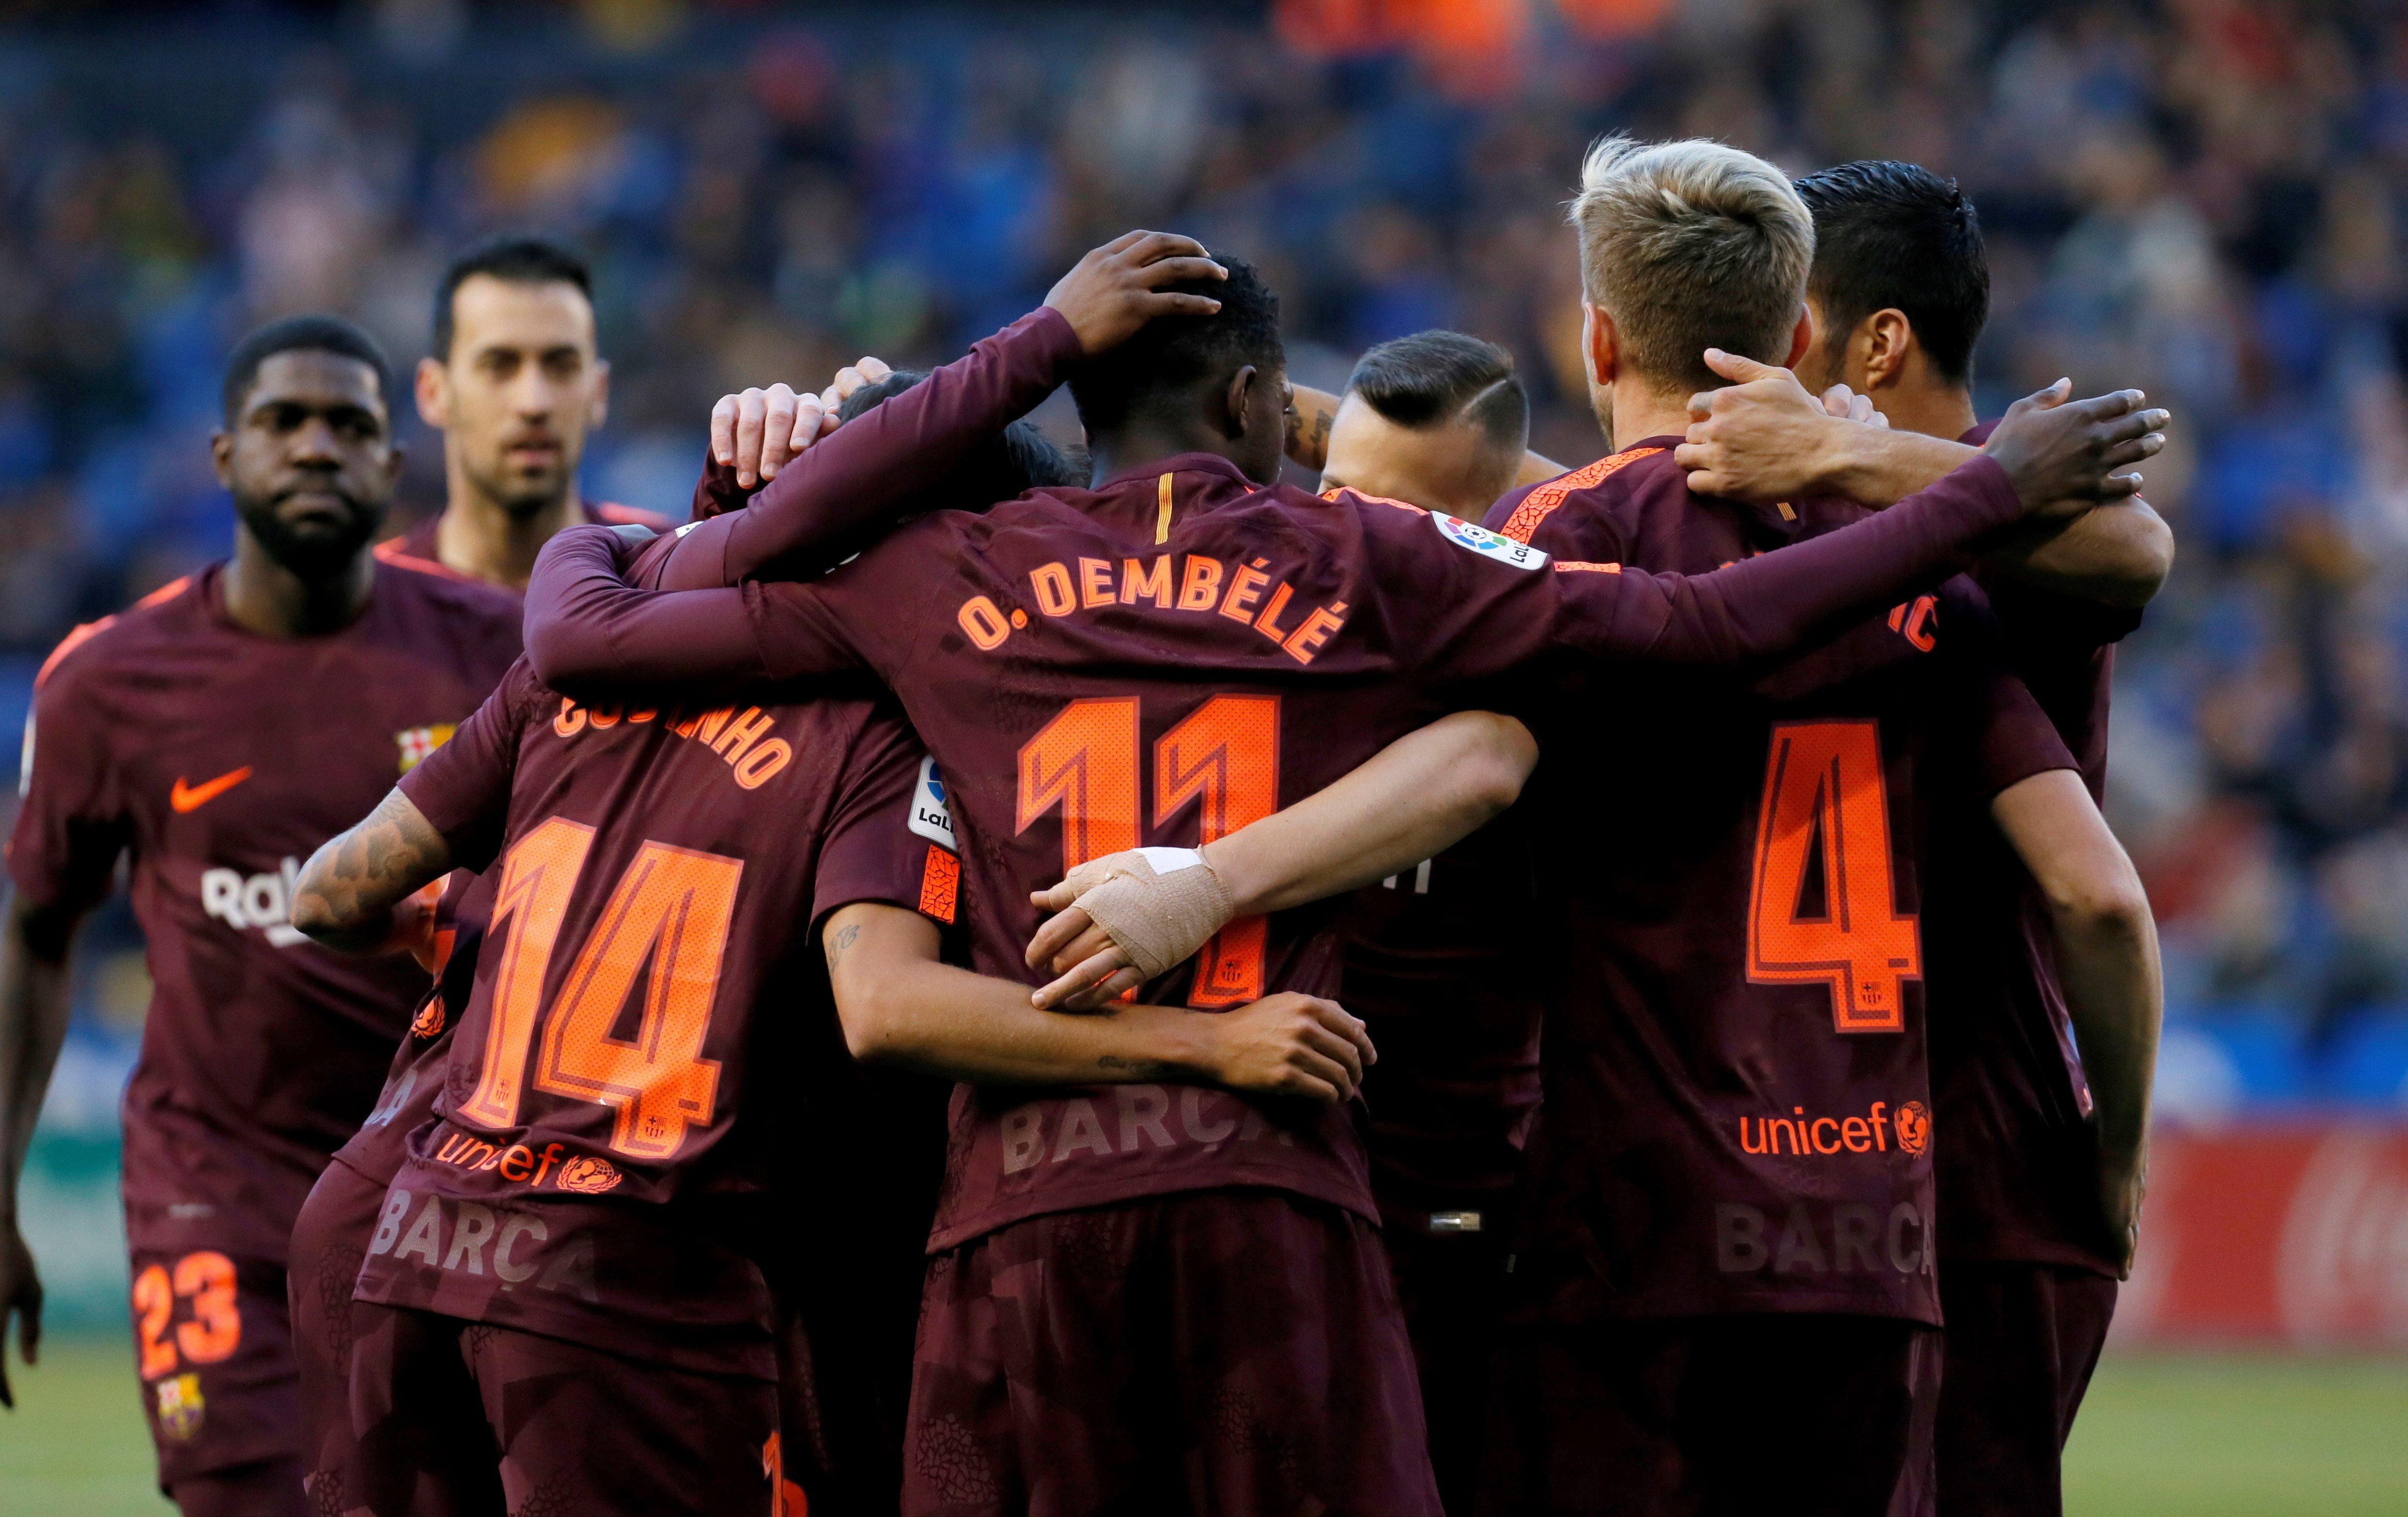 FC Barcelona campeão de Espanha pela 25.ª vez, ao vencer na Corunha